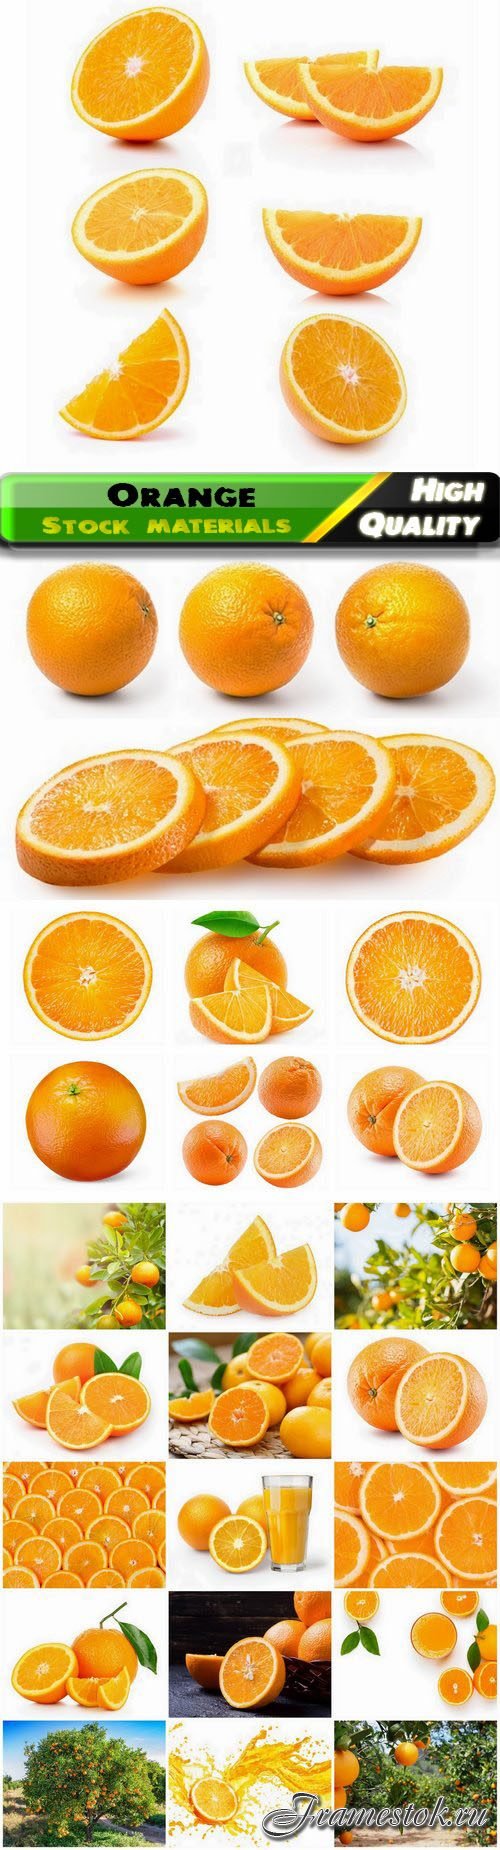 Orange fruit of the genus Citrus healthy food with vitamins 25 HQ Jpg